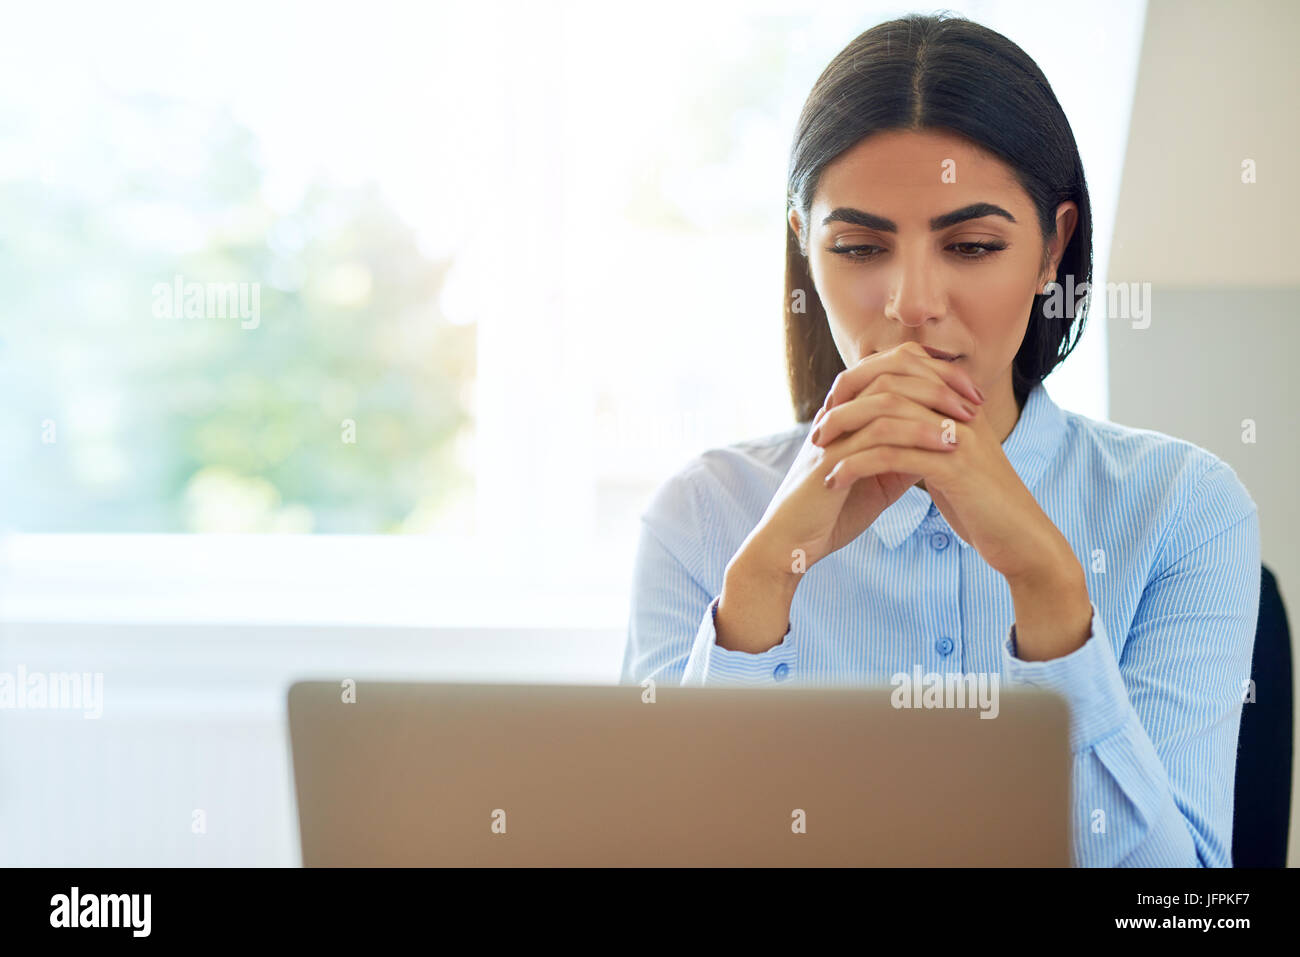 Young businesswoman sérieuse avec une expression inquiète en train de lire l'information sur son ordinateur portable avec les mains jointes contre une fenêtre haute avec spa de copie Banque D'Images